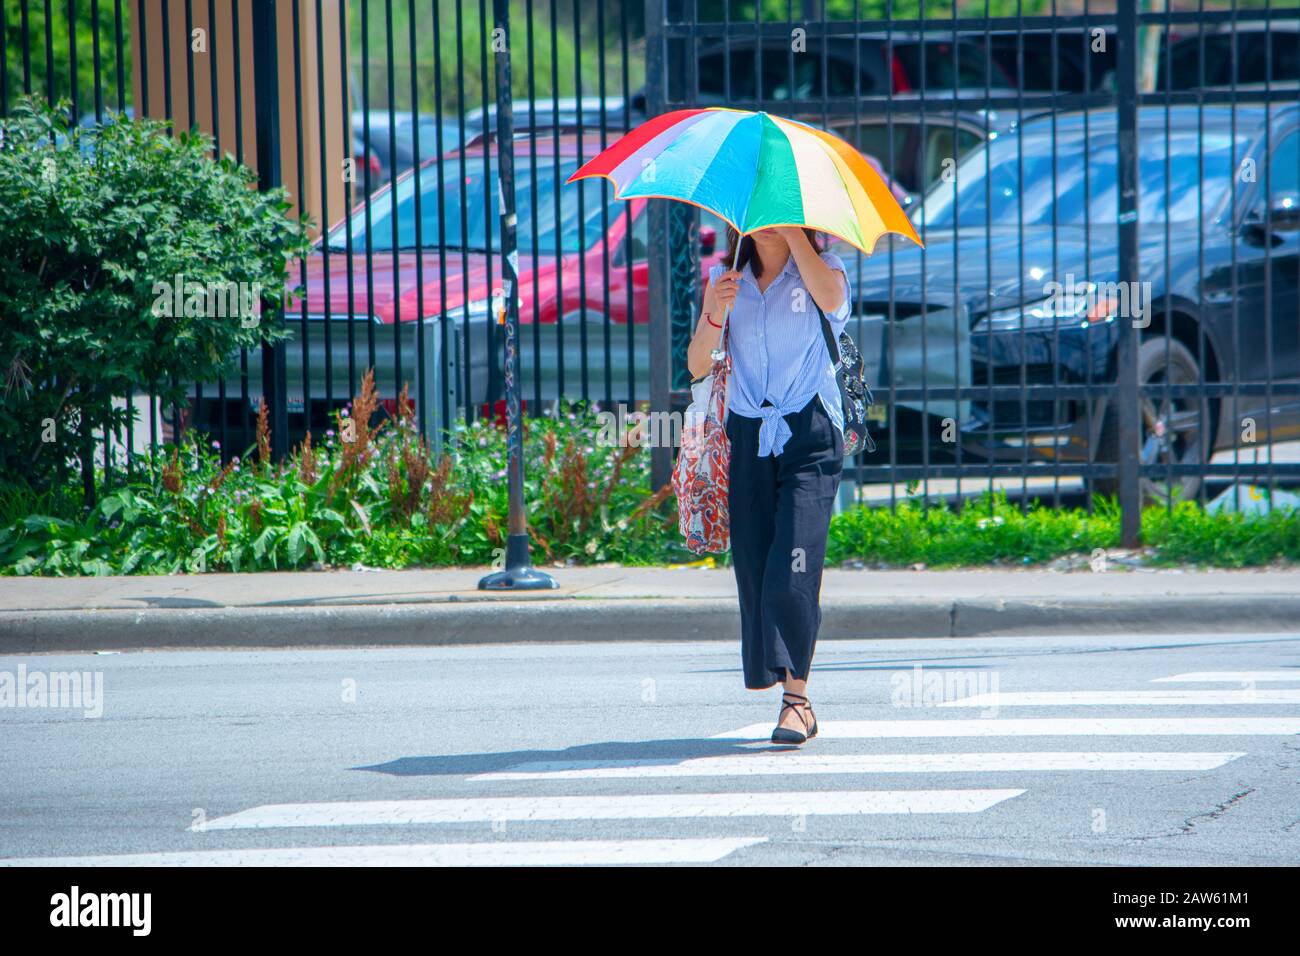 Eine junge Dame schützt sich mit einem bunten Regenbogenschirm vor den Sonnen, die sie in Chicagos Chinatown auf der Straße überquert Stockfoto